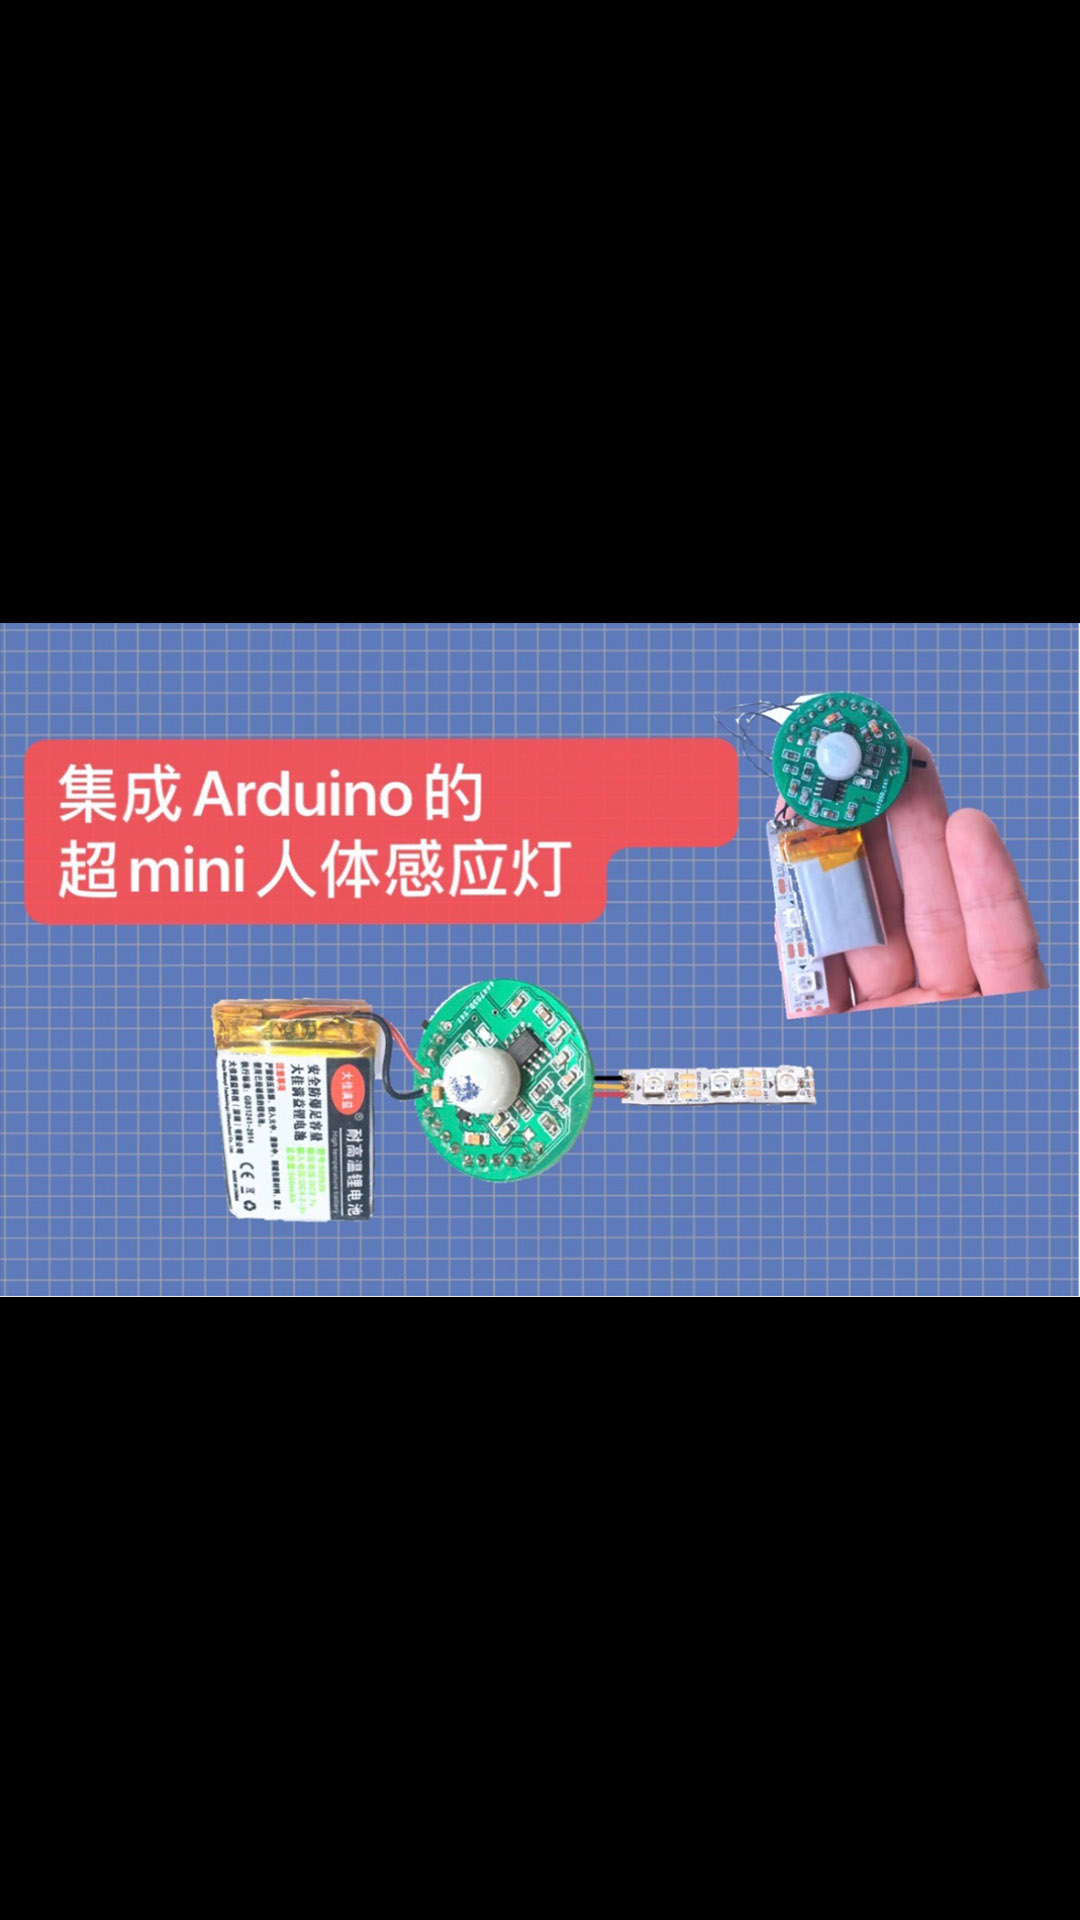 集成Arduino的超mini人体感应灯part33